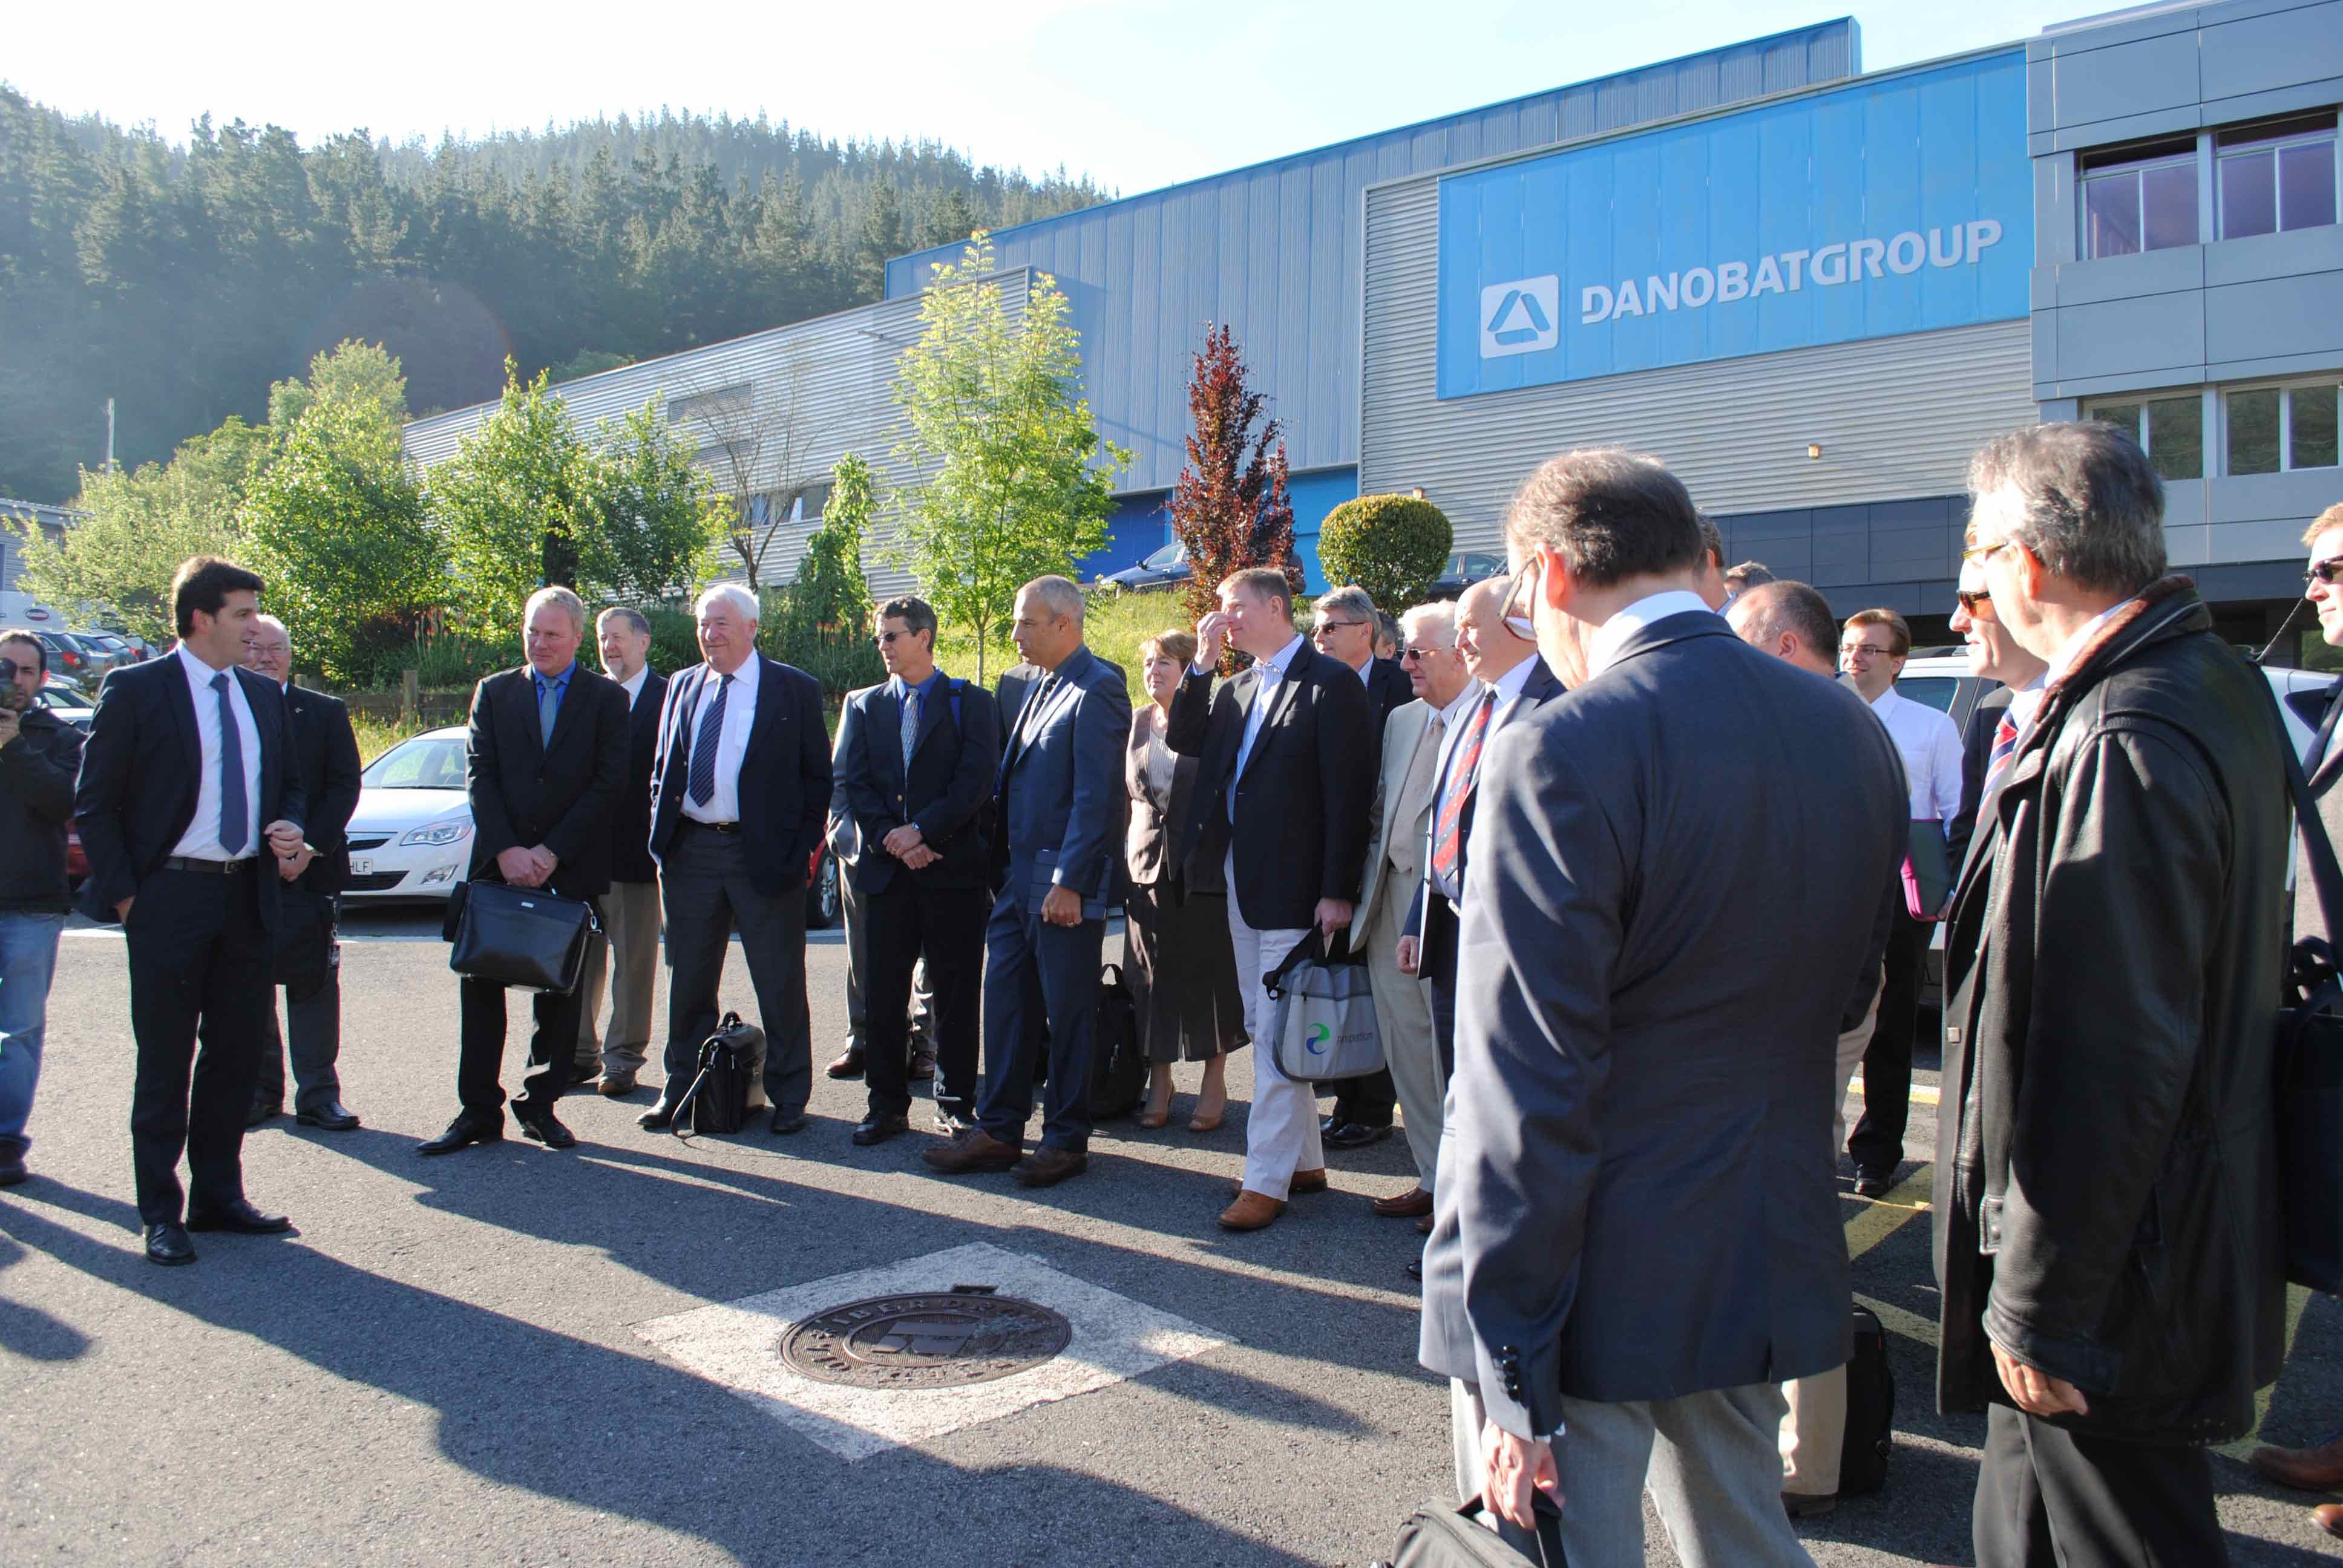 El centro británico de I+D de Boeing y Rolls-Royce se reúne en Euskadi para conocer sus capacidades en Fabricación Avanzada